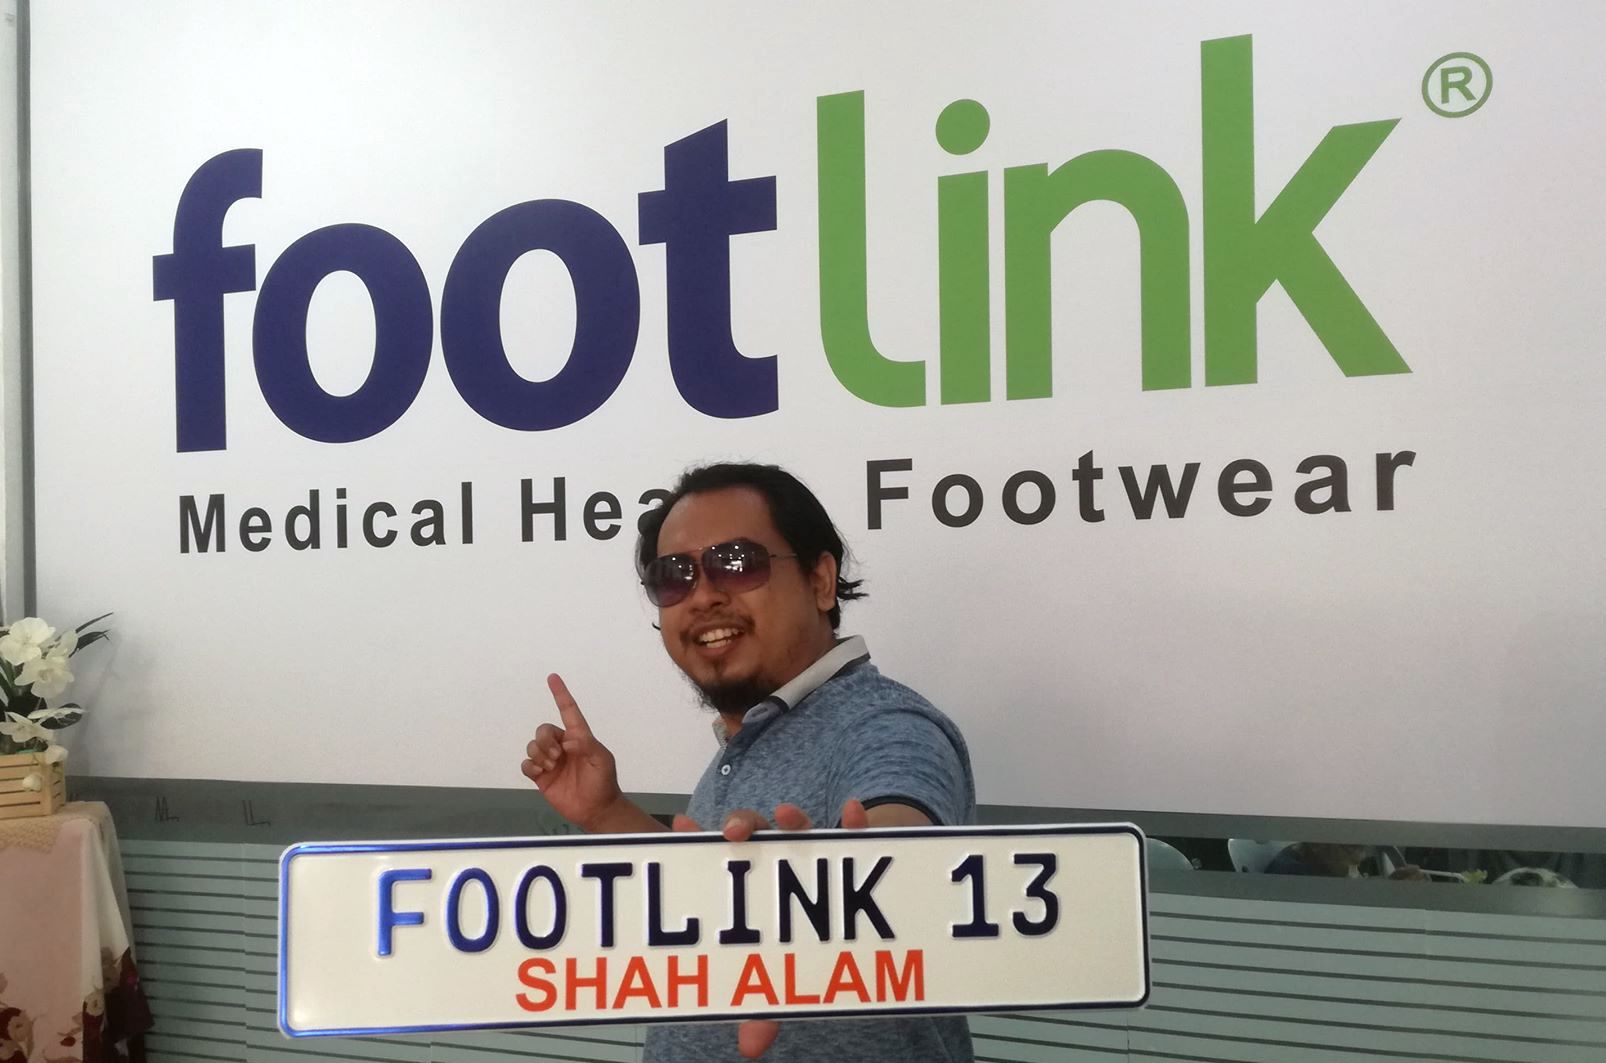 Footlink 13 Shah Alam Promosi